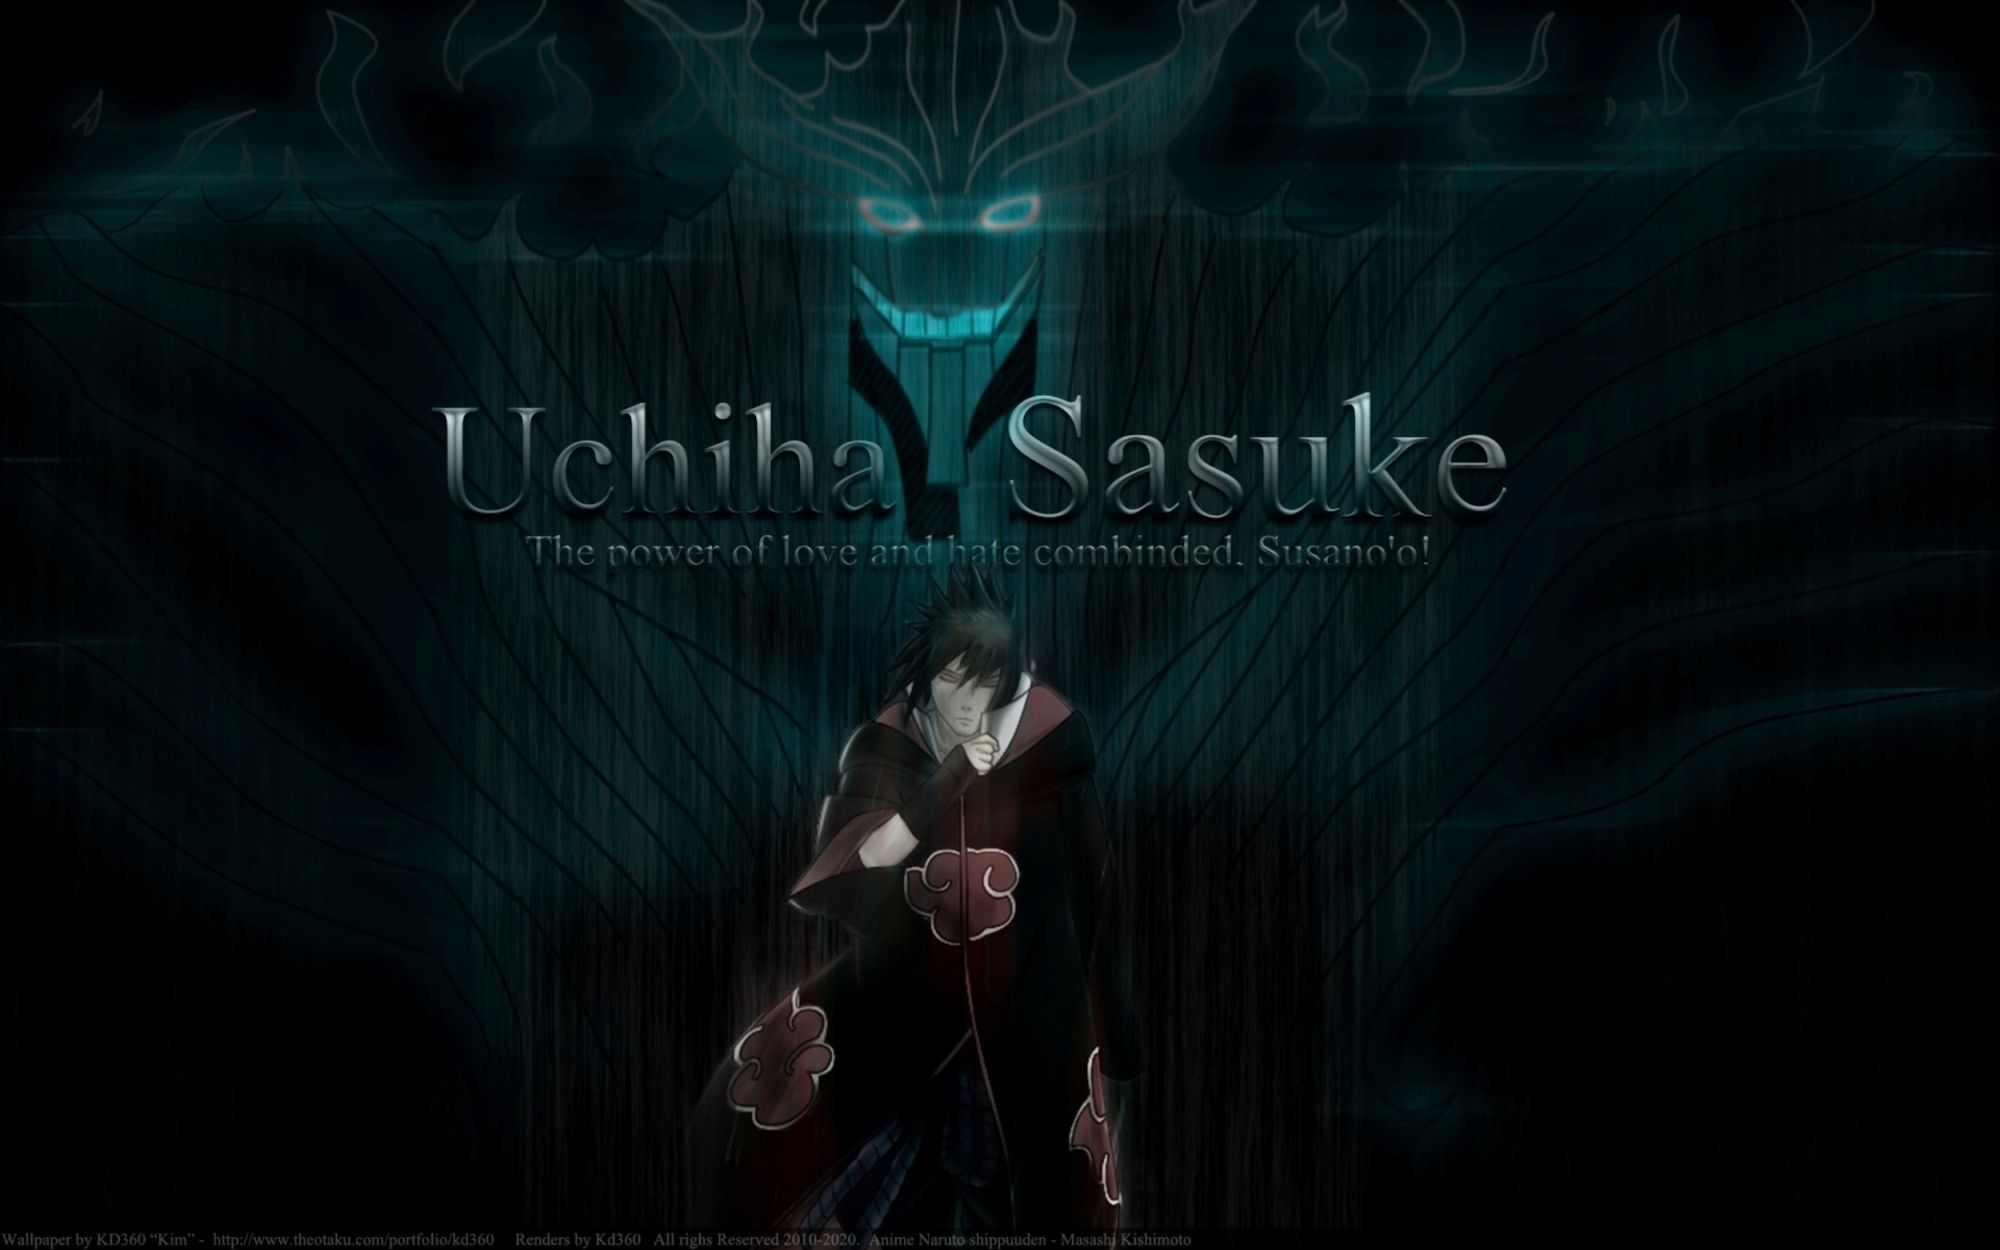 Sasuke is the best - Uchiha Sasuke Wallpaper 15494046 - Fanpop